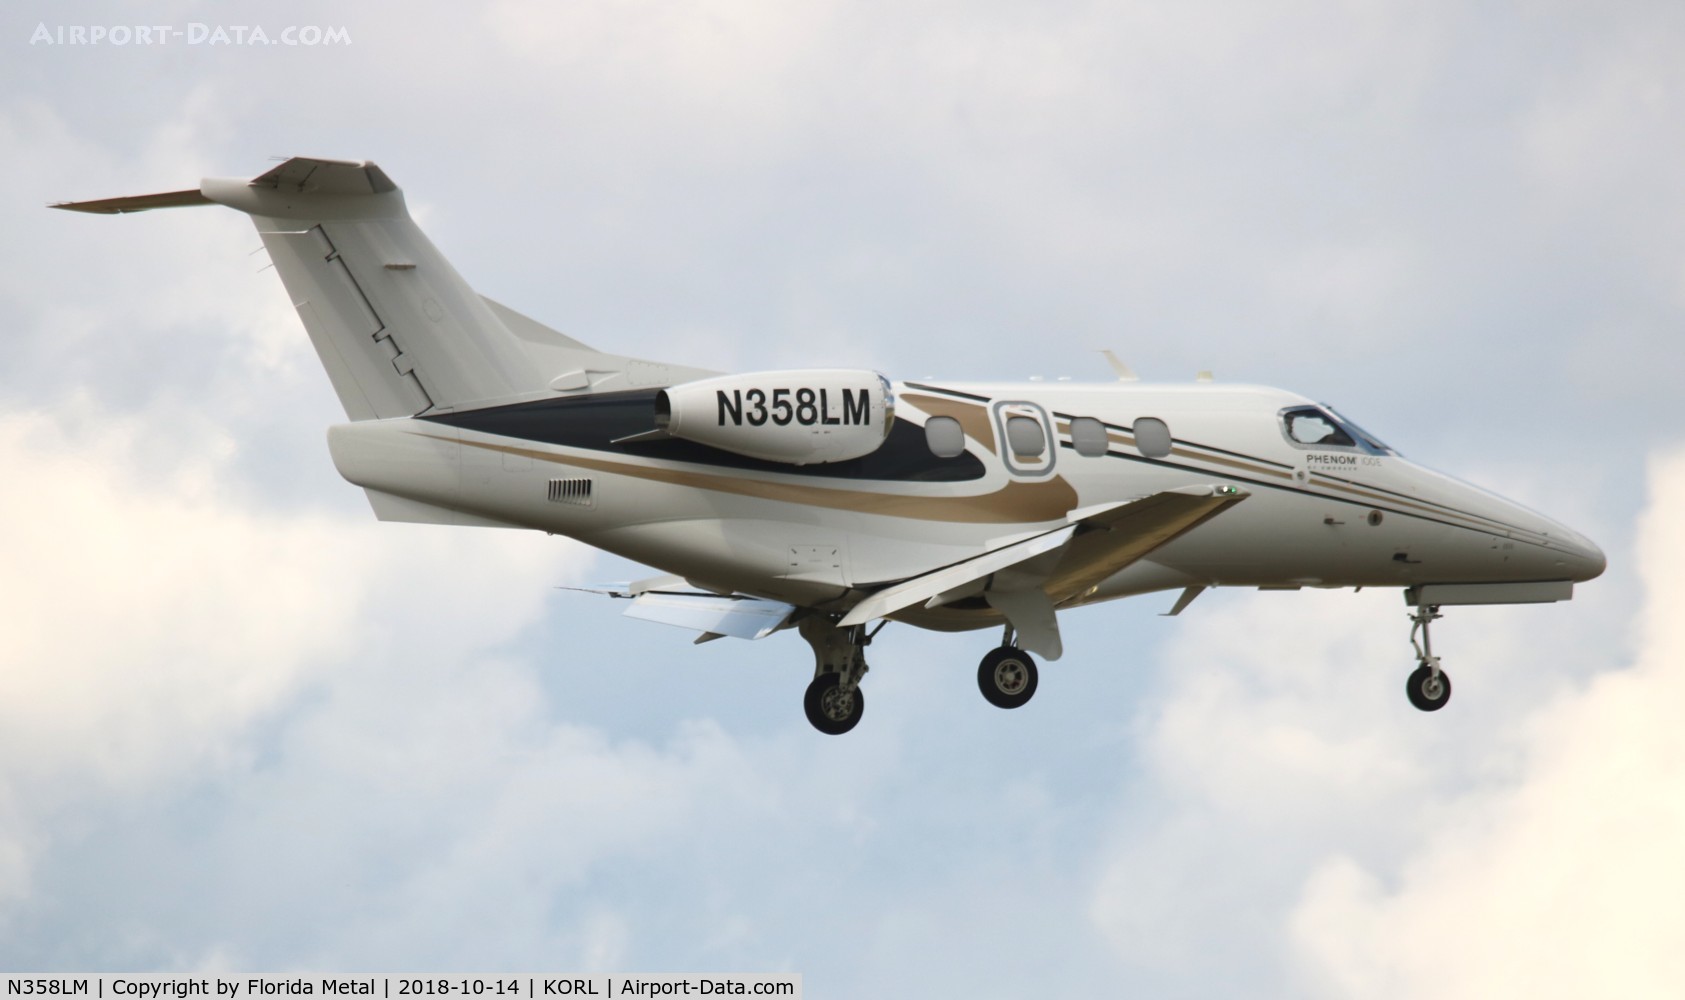 N358LM, 2015 Embraer EMB-500 Phenom 100 C/N 50000358, Phenom 100 zx